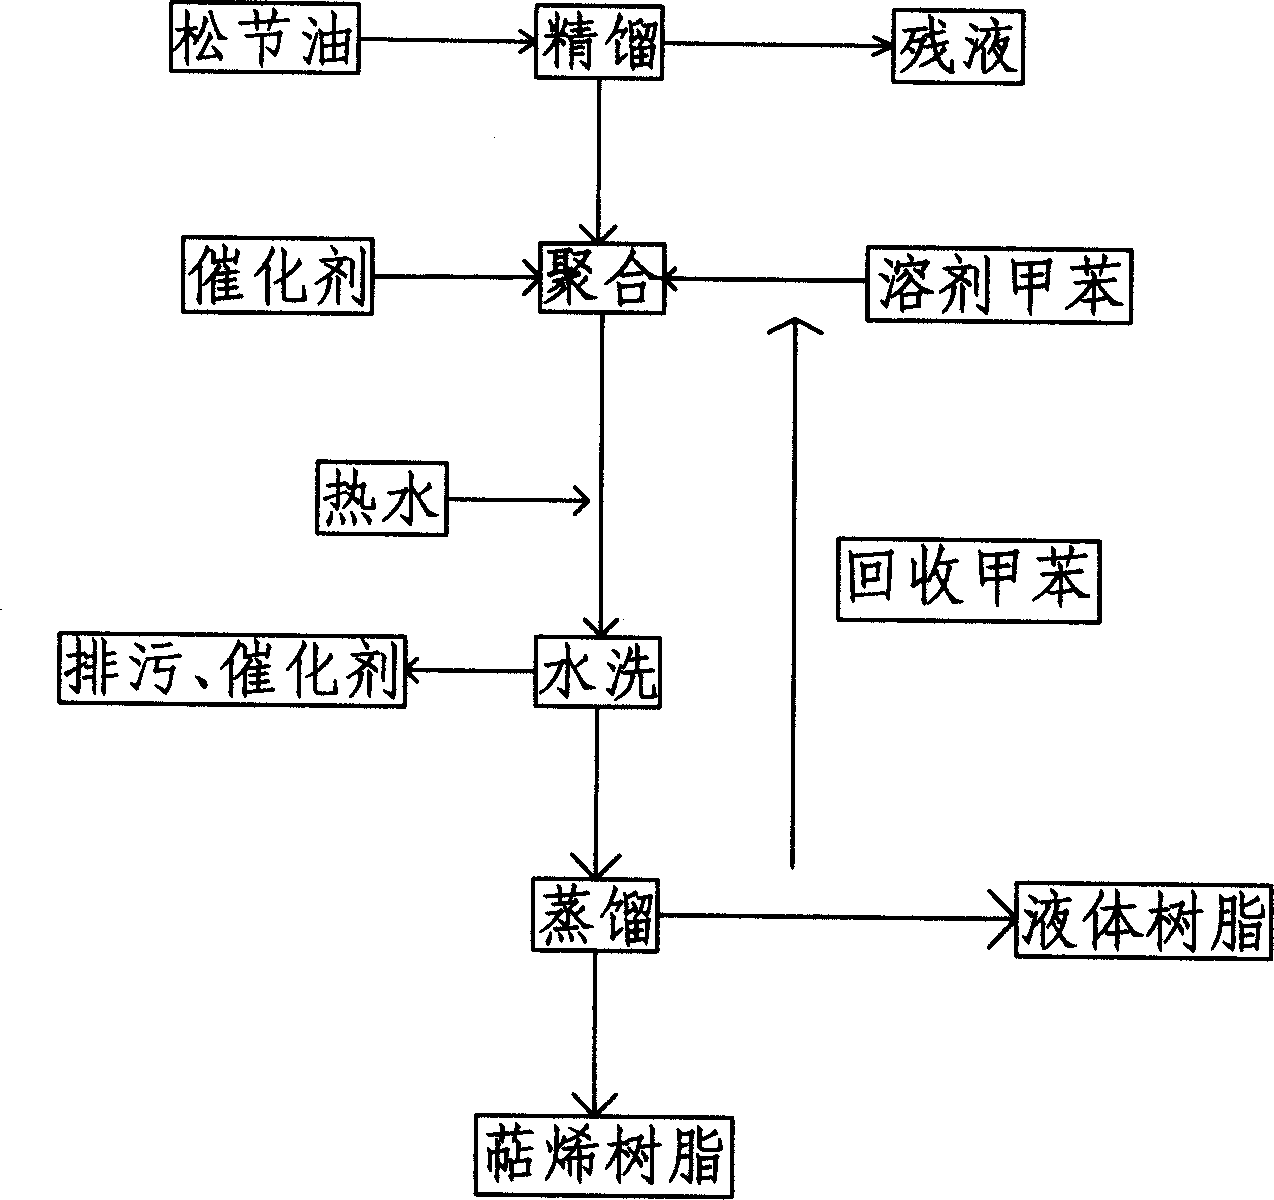 Production method of terpene resin